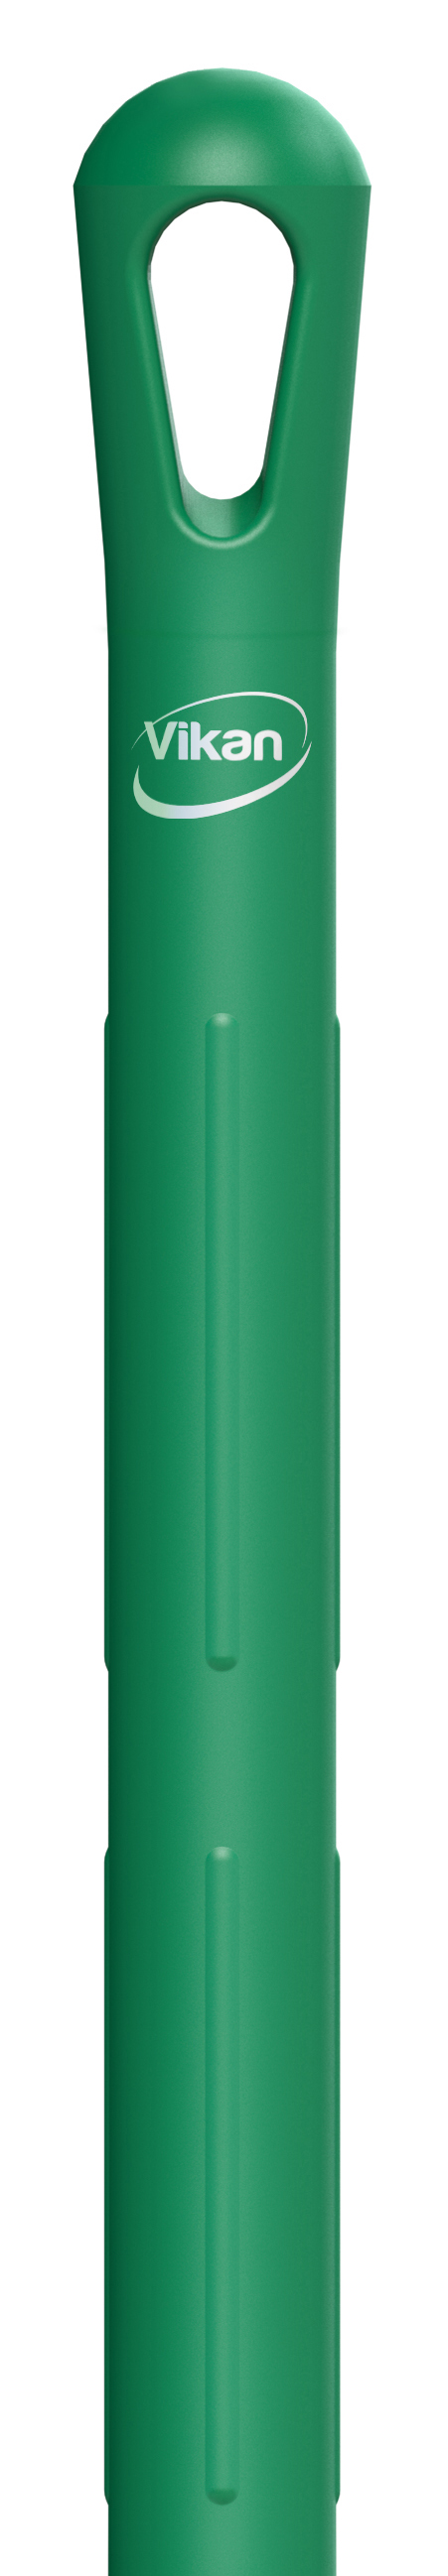 Рукоятка Vikan ультра гигиеническая, 1500 мм, зеленая